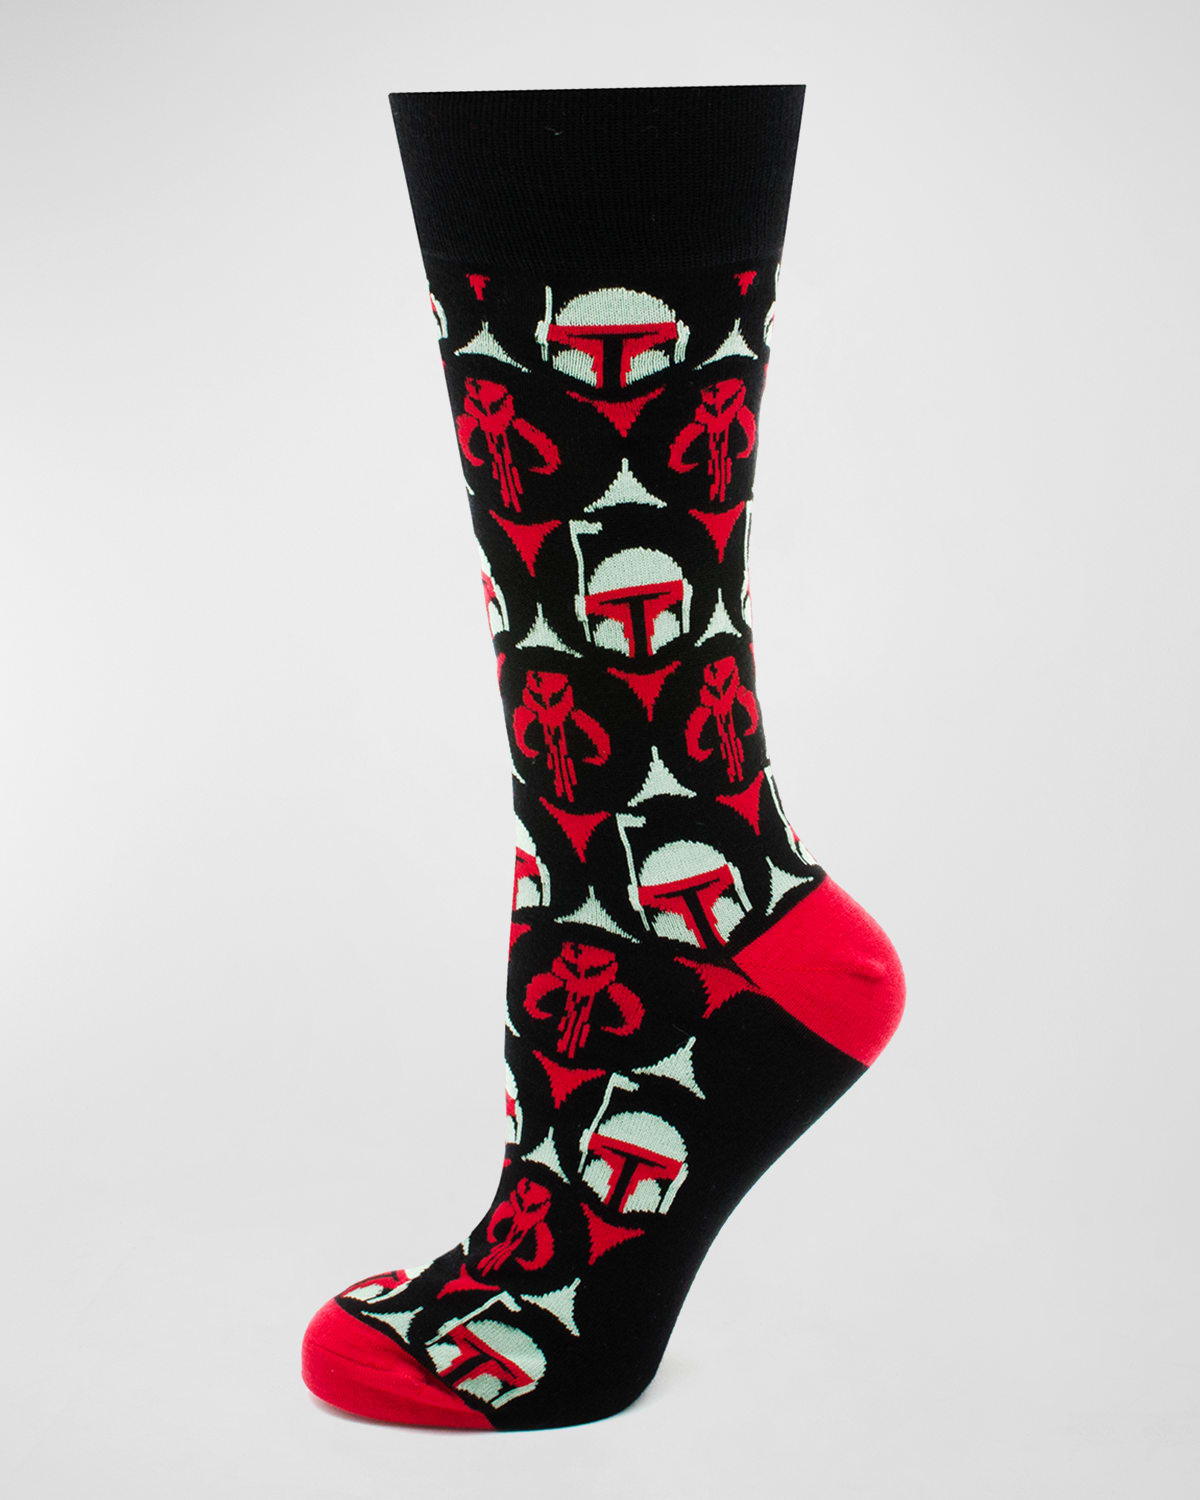 Star Wars Boba Fett Bounty Hunter Socks